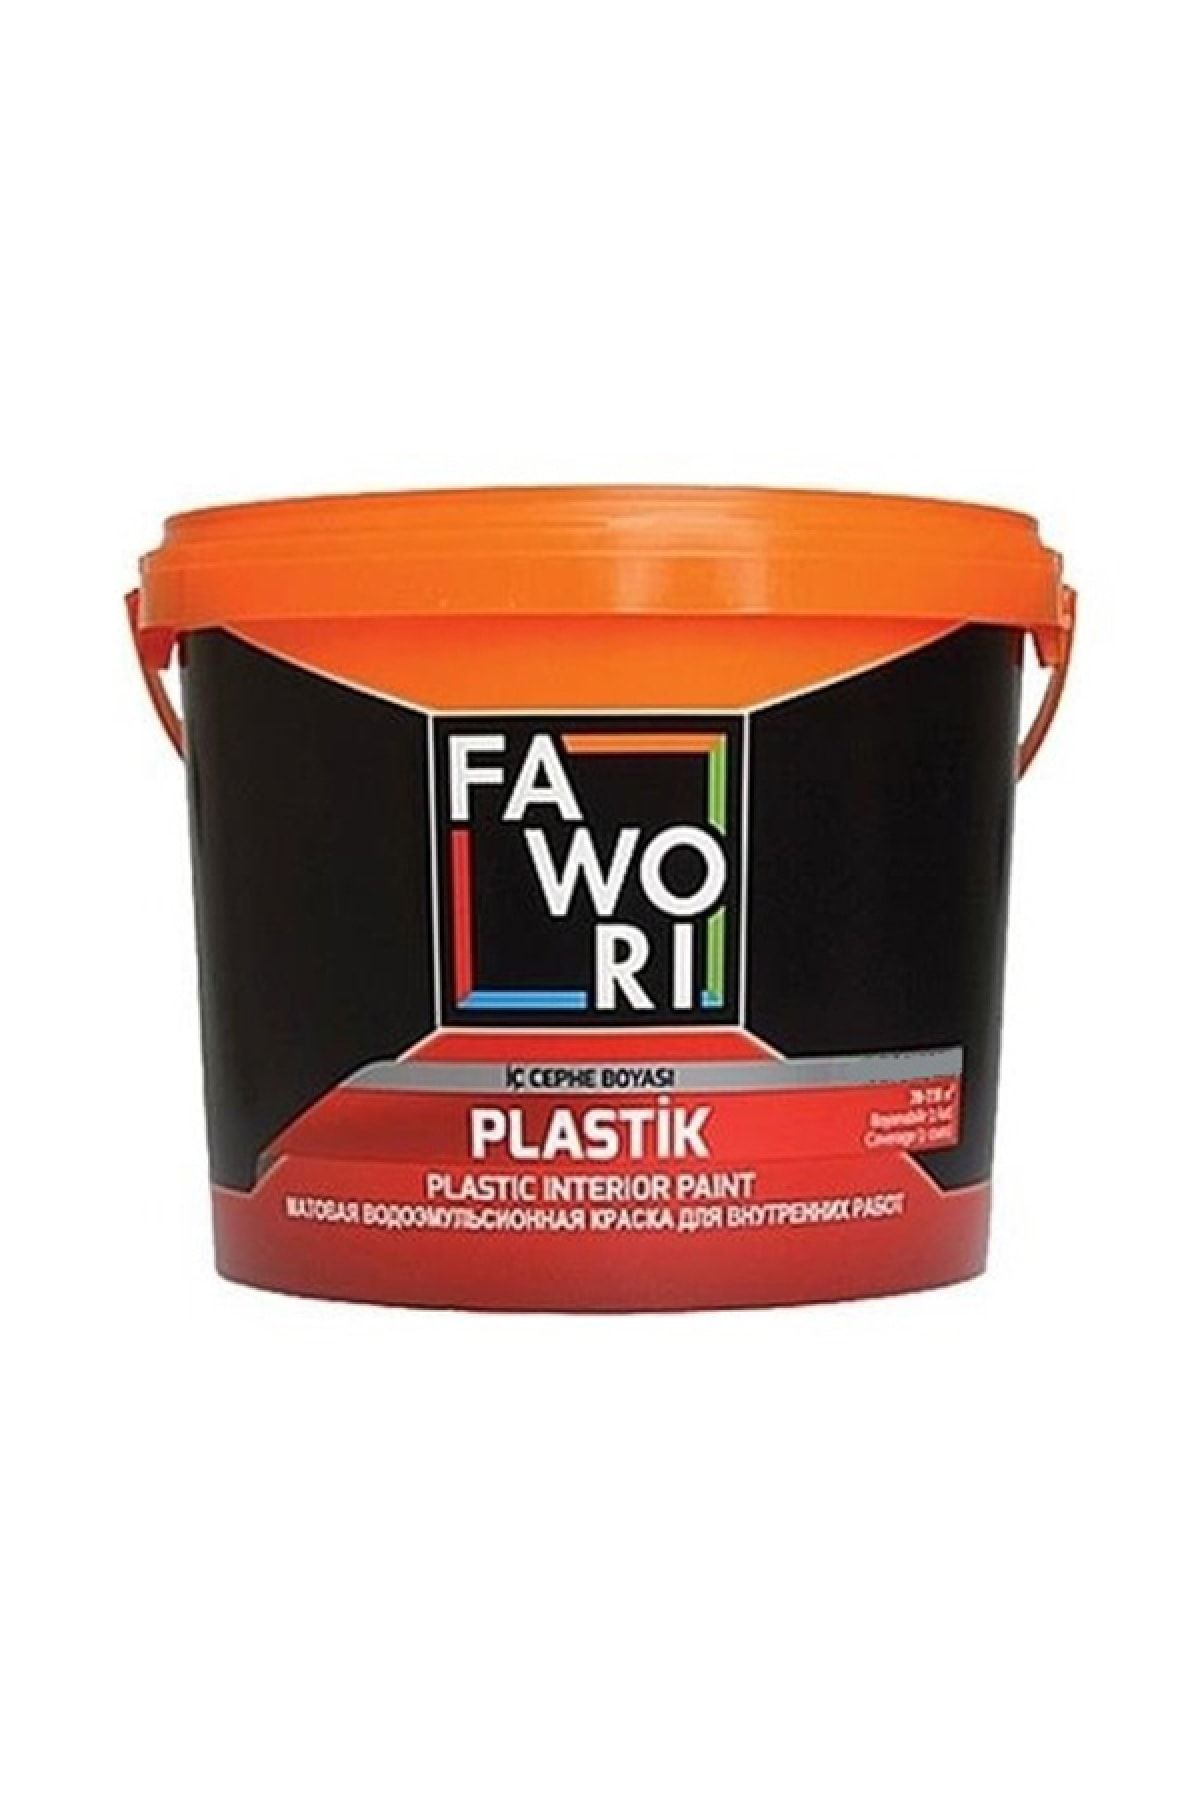 Fawori Plastik Iç Cephe Duvar Boyası 3.5 Kg Renk:hercai